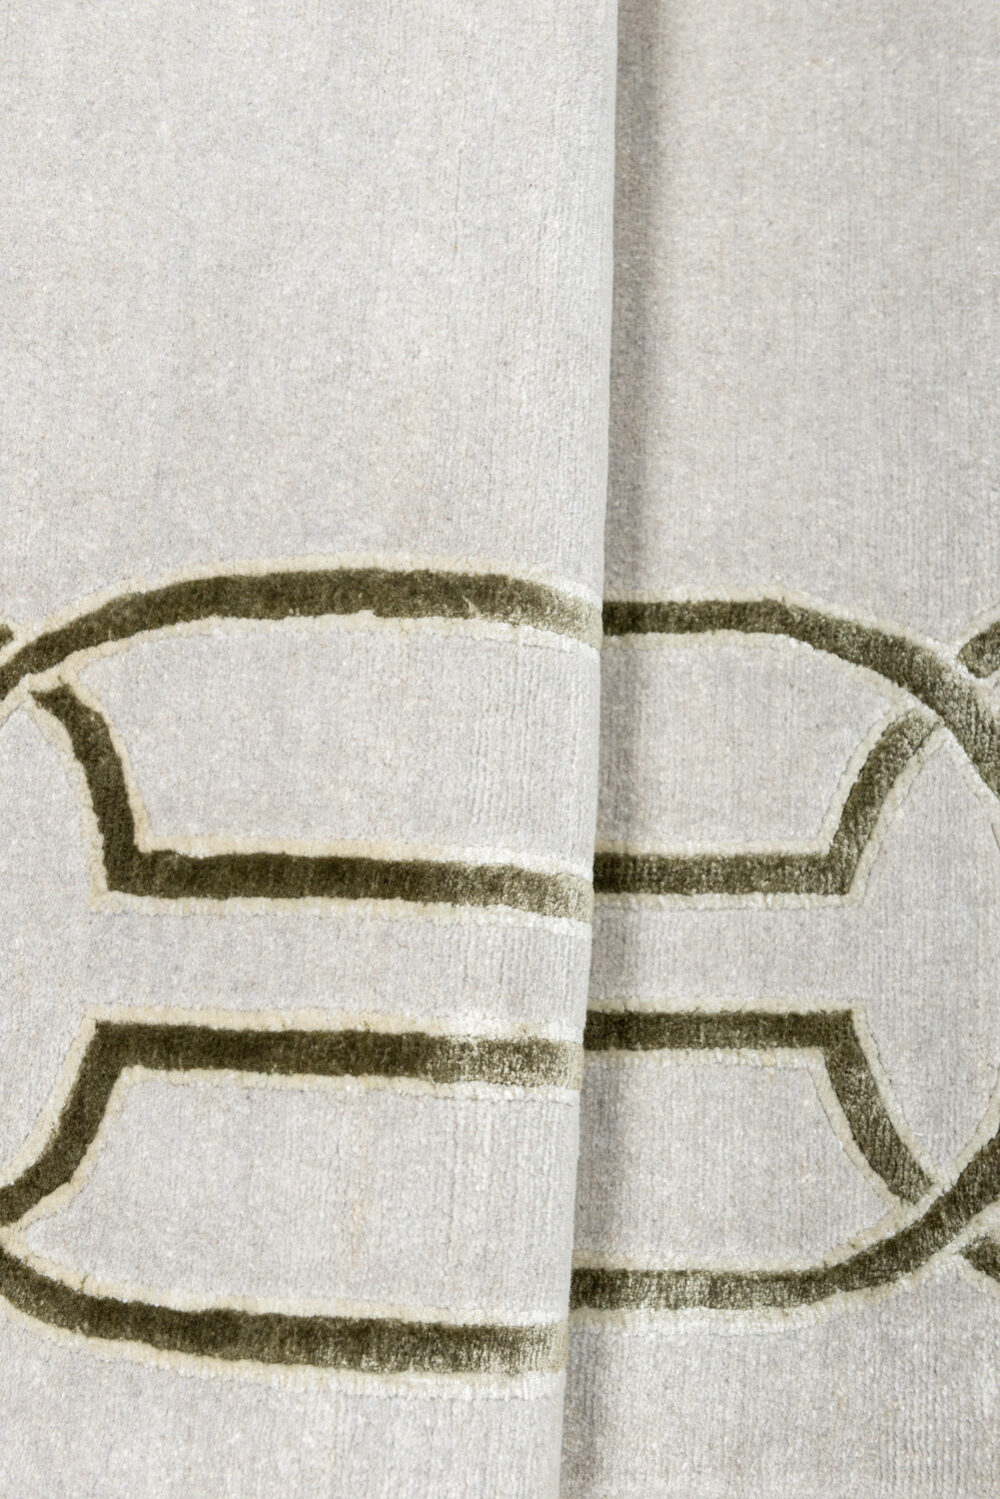 Diseño de lujo y alfombras de alta gama hechas a medida • LEMPICKA